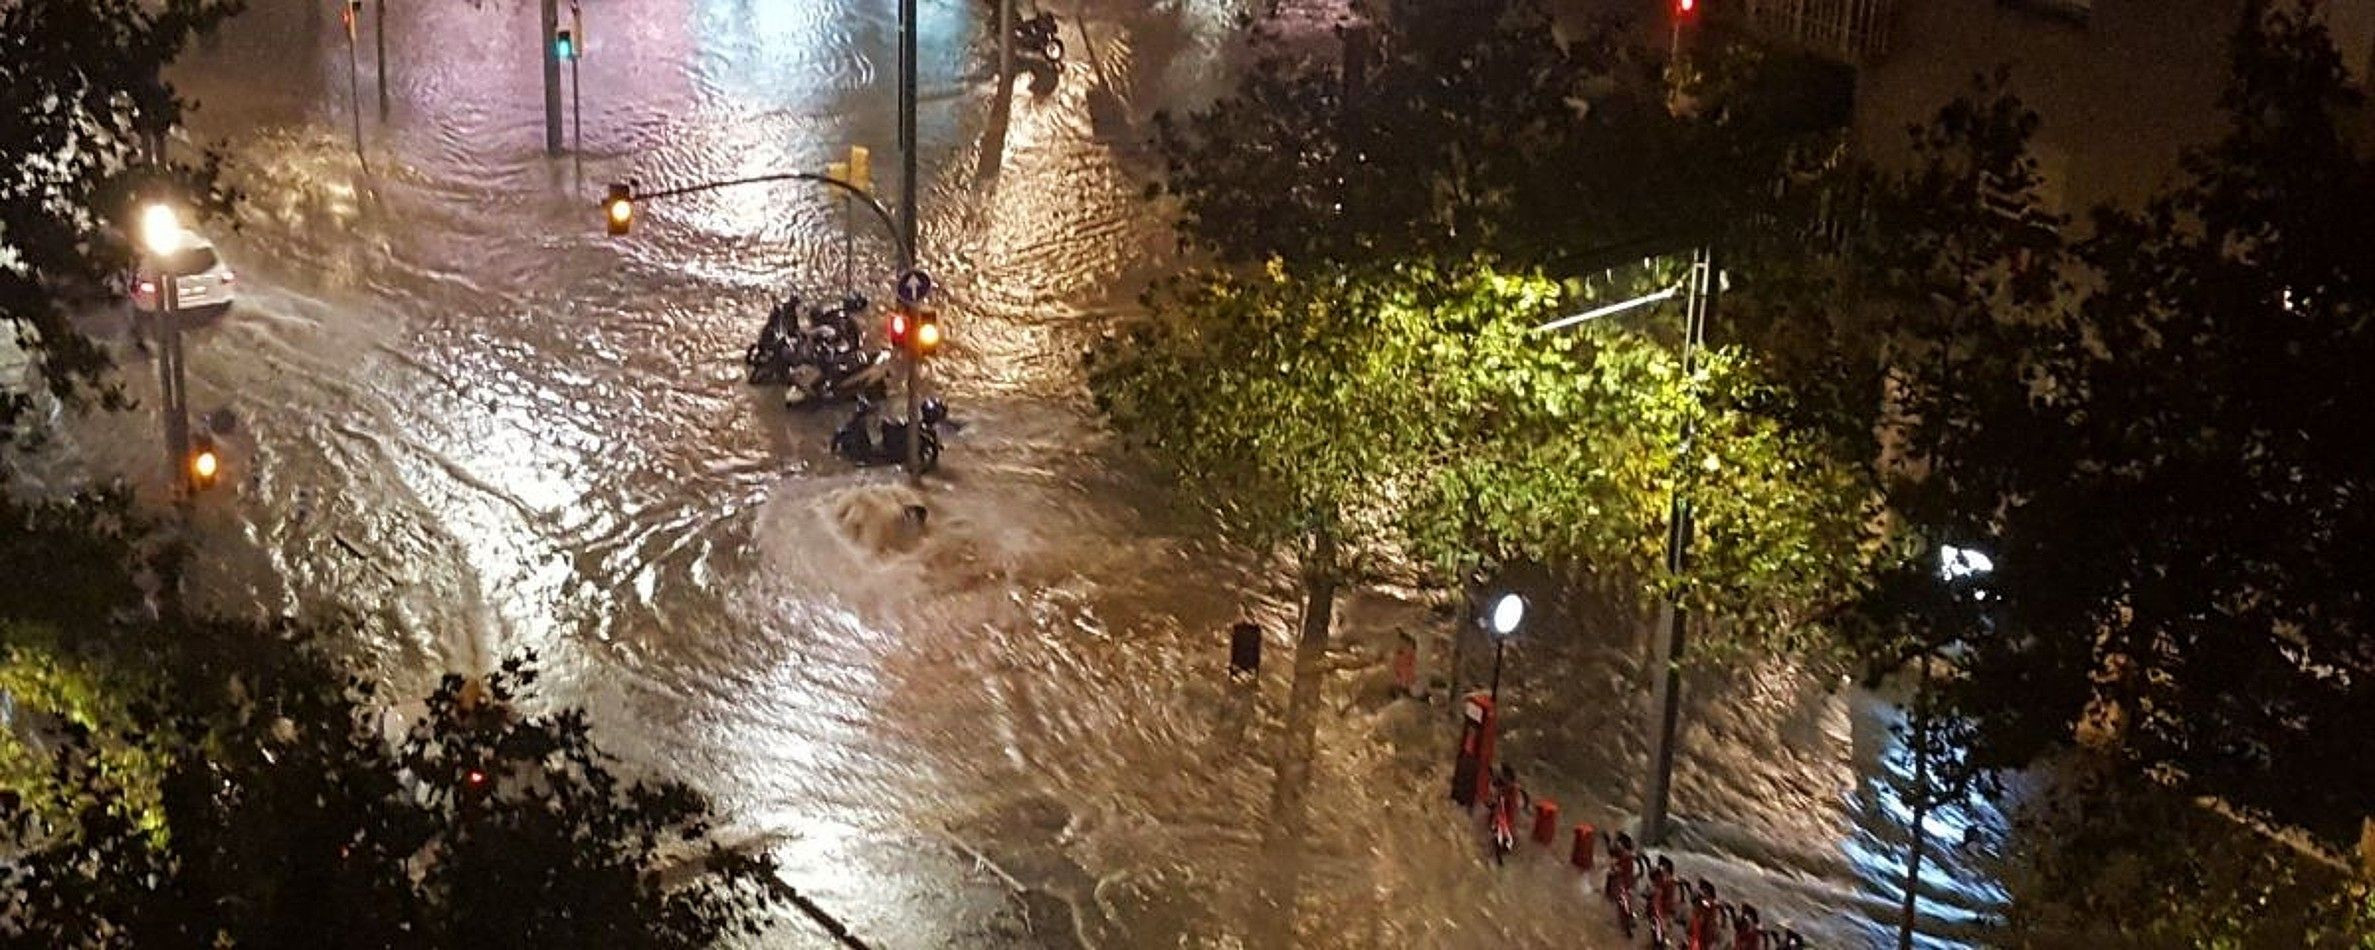 Inundación en Barcelona / @XAROGRANADOS